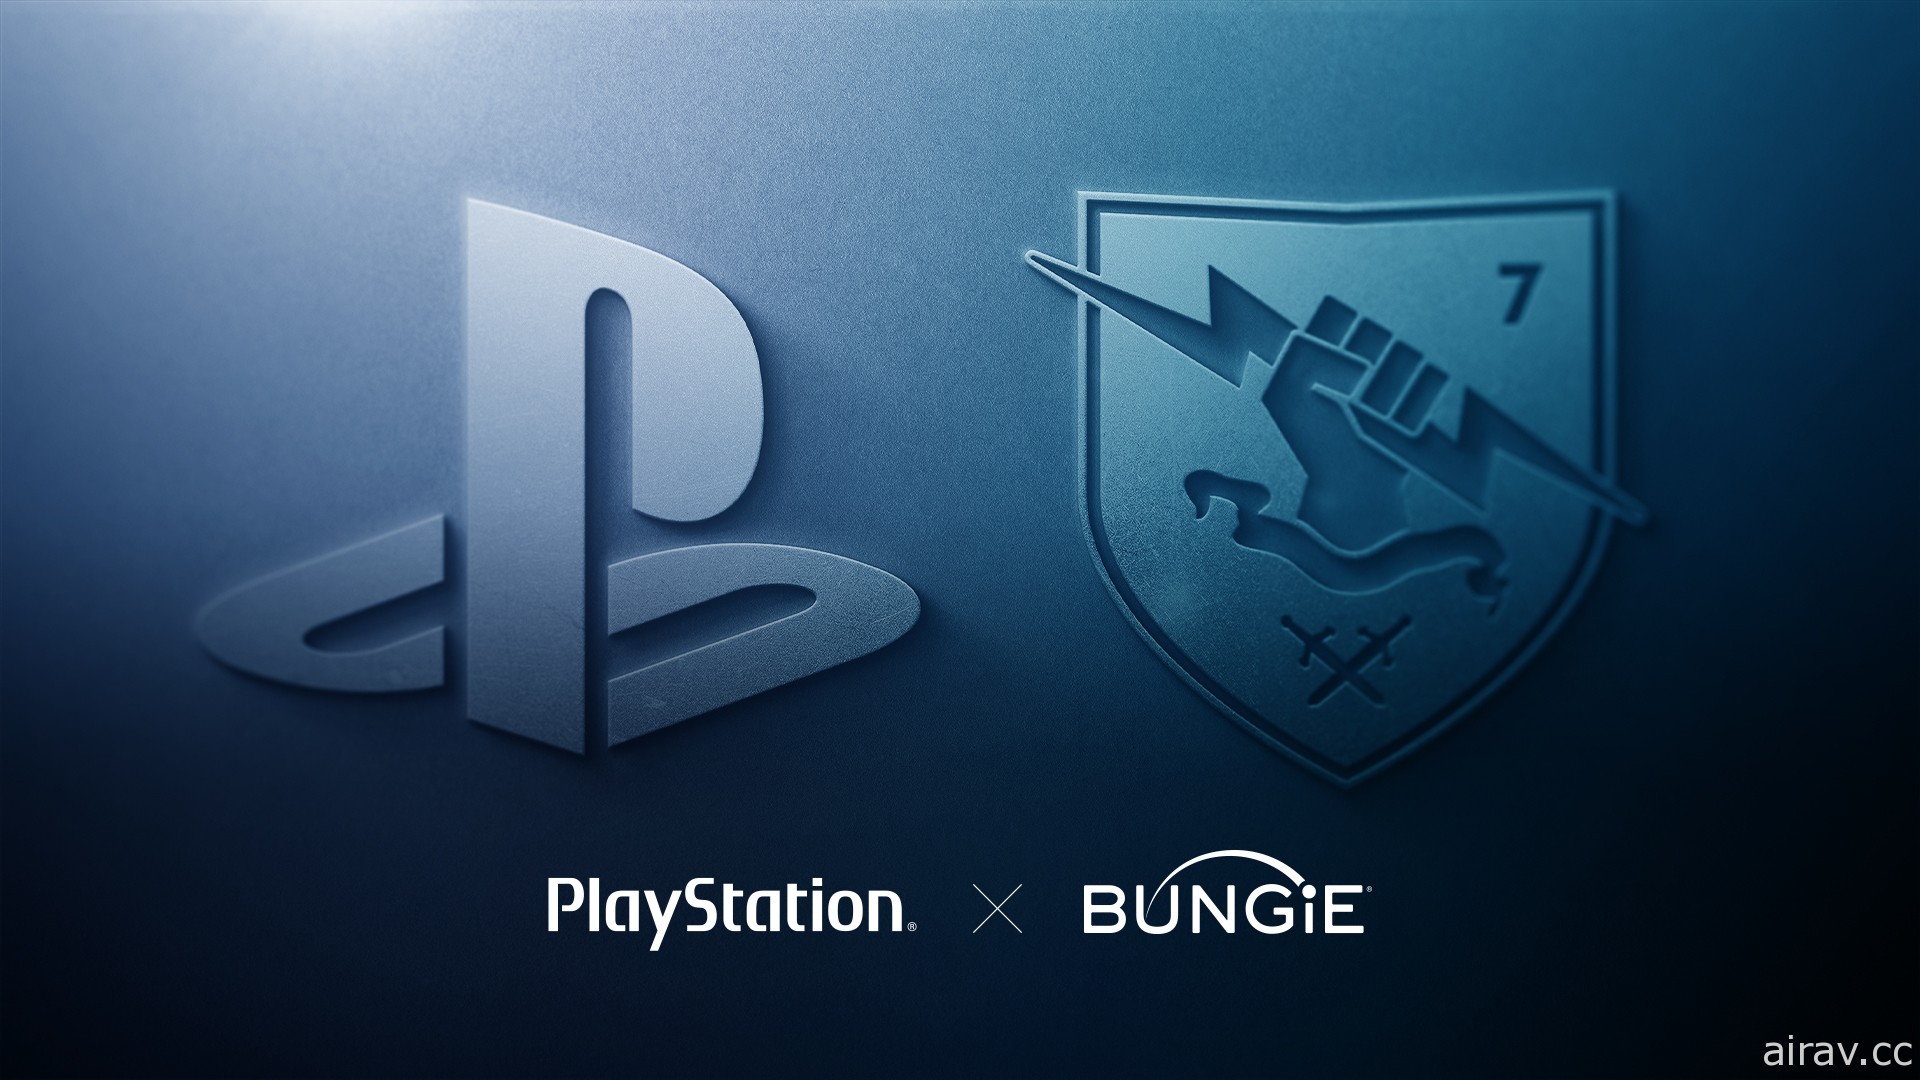 SIE 宣布以 36 亿美元收购《最后一战》《天命》开发商 Bungie